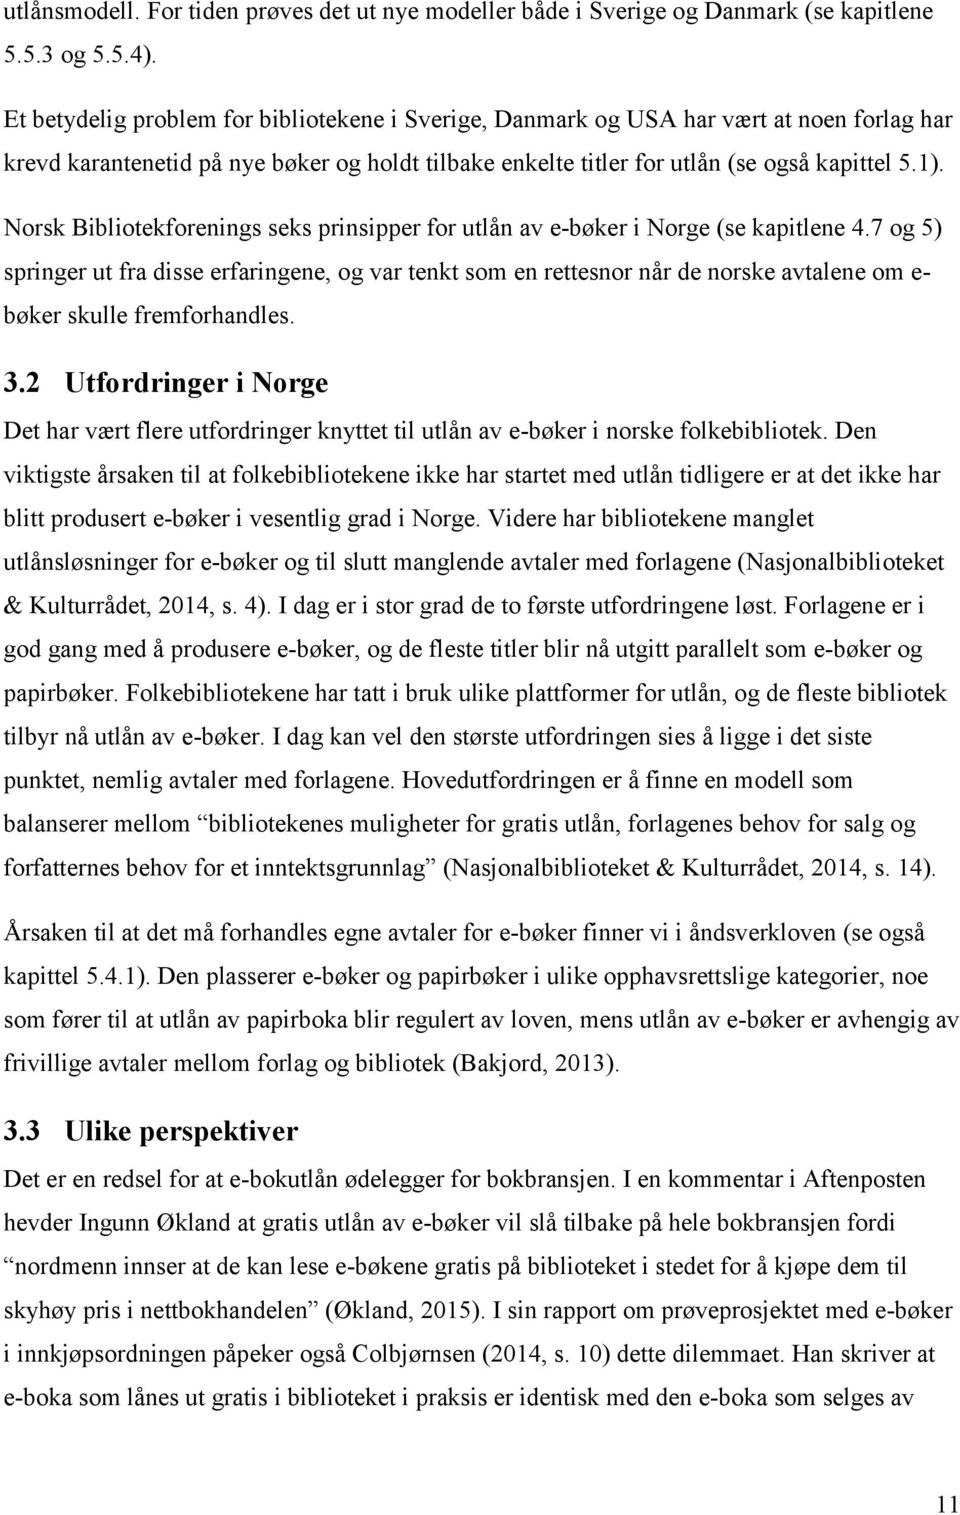 Norsk Bibliotekforenings seks prinsipper for utlån av e-bøker i Norge (se kapitlene 4.